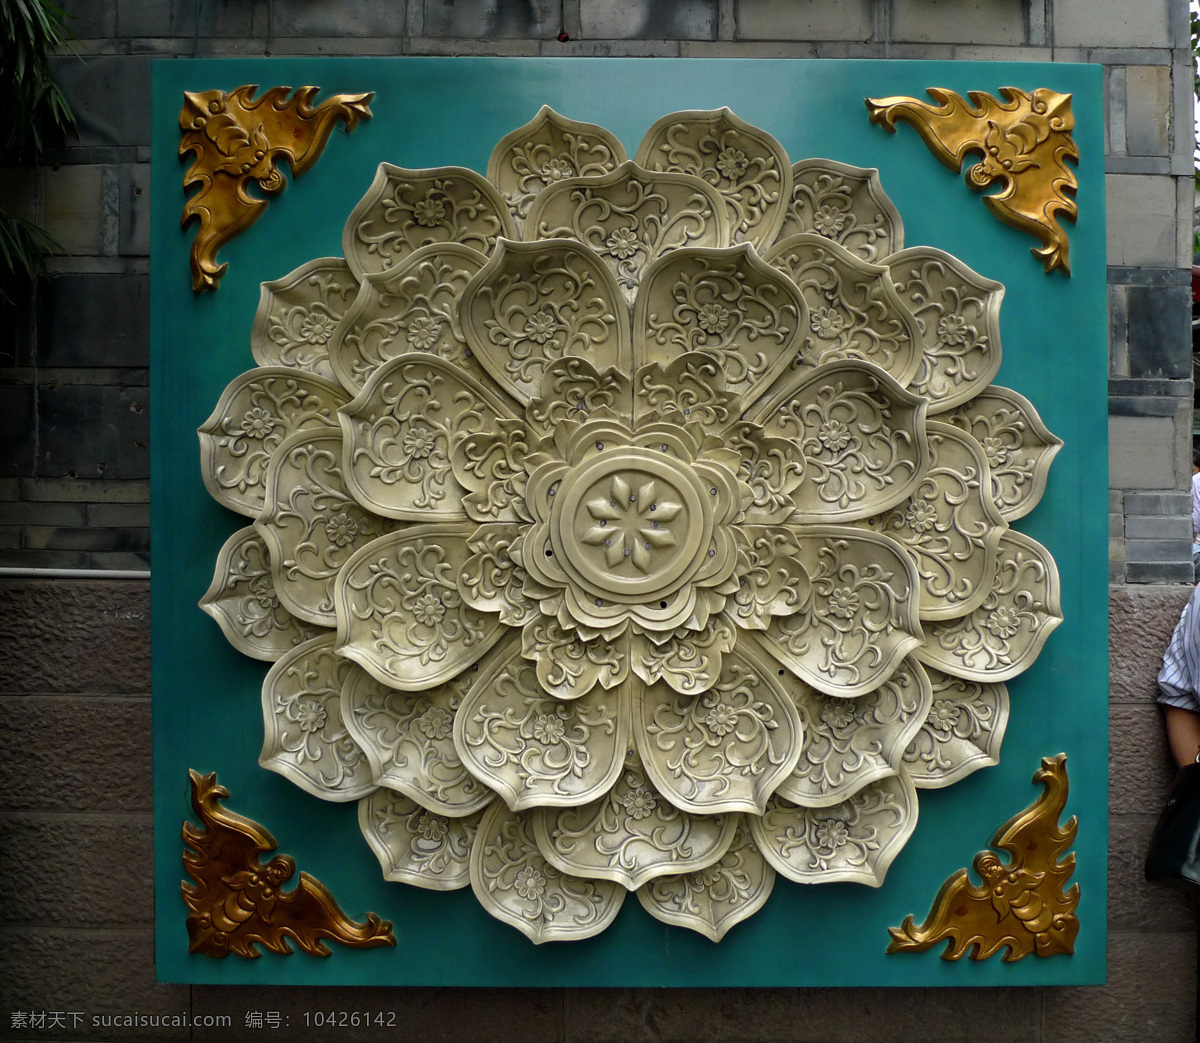 釉瓷 莲花 雕塑 佛教 建筑园林 平面素材 釉瓷莲花 墙饰 文化艺术